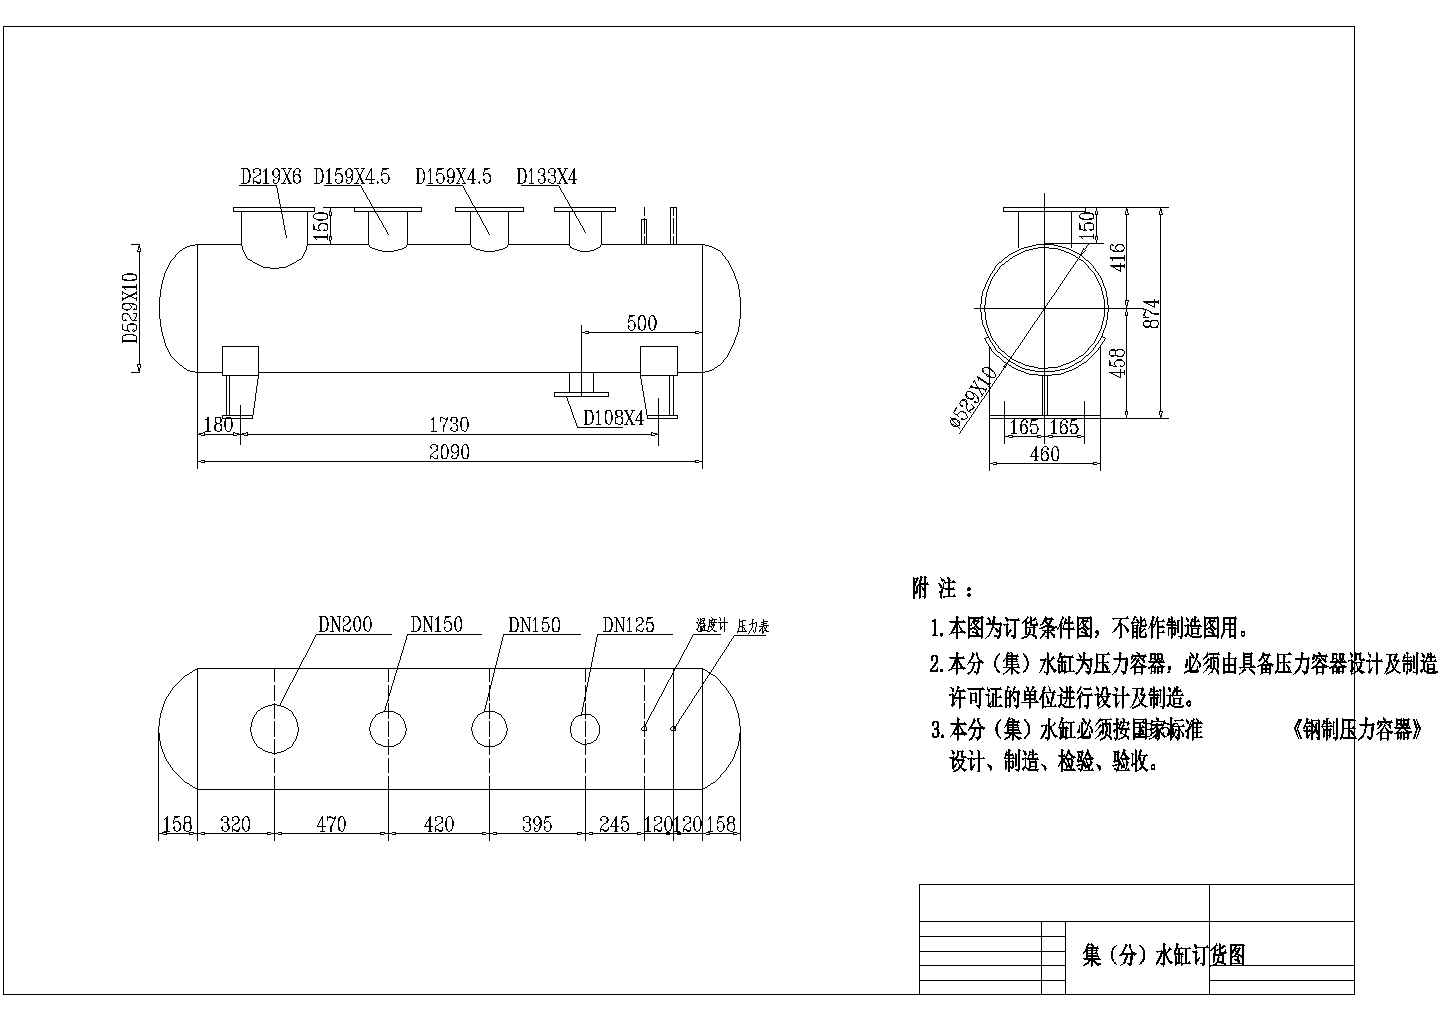 江苏省某地区改造设计换热站全套图纸